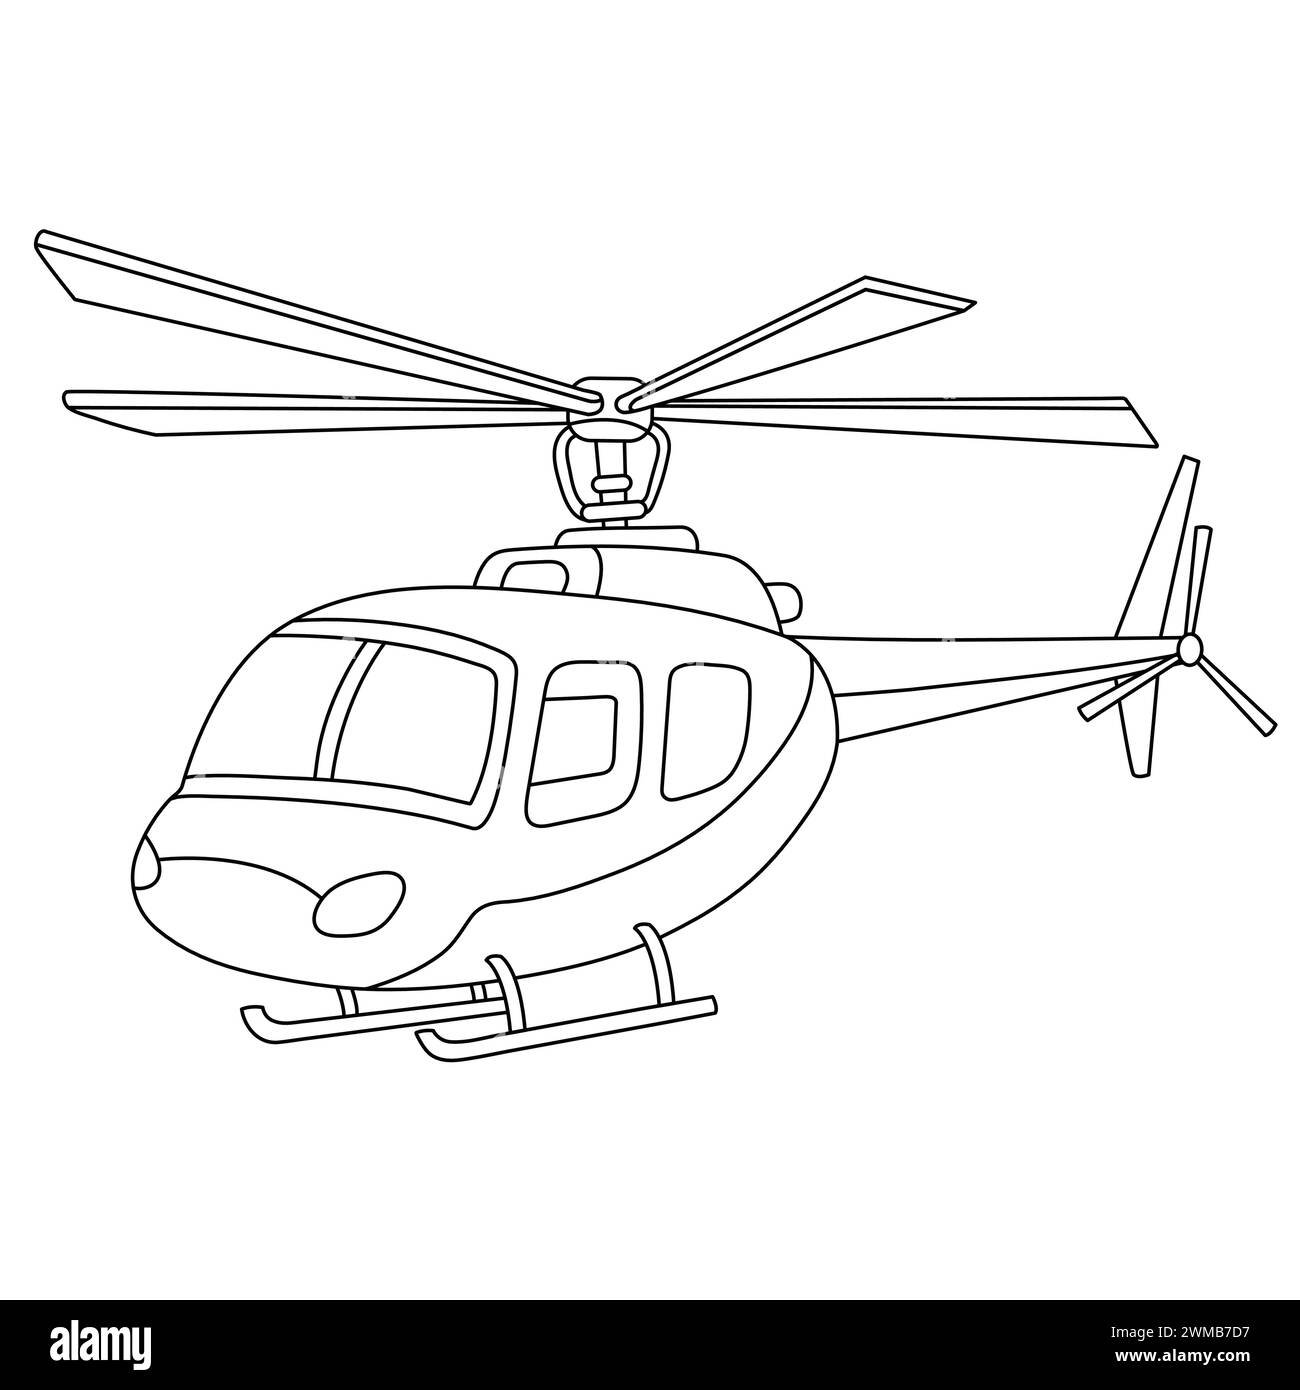 Ausmalseite für den Cartoon-Hubschrauber. Militär Hubschrauber Umriss Illustration Vektor. Zerkleinerer isoliert auf weißem Hintergrund. Kopterzeichnung Stock Vektor